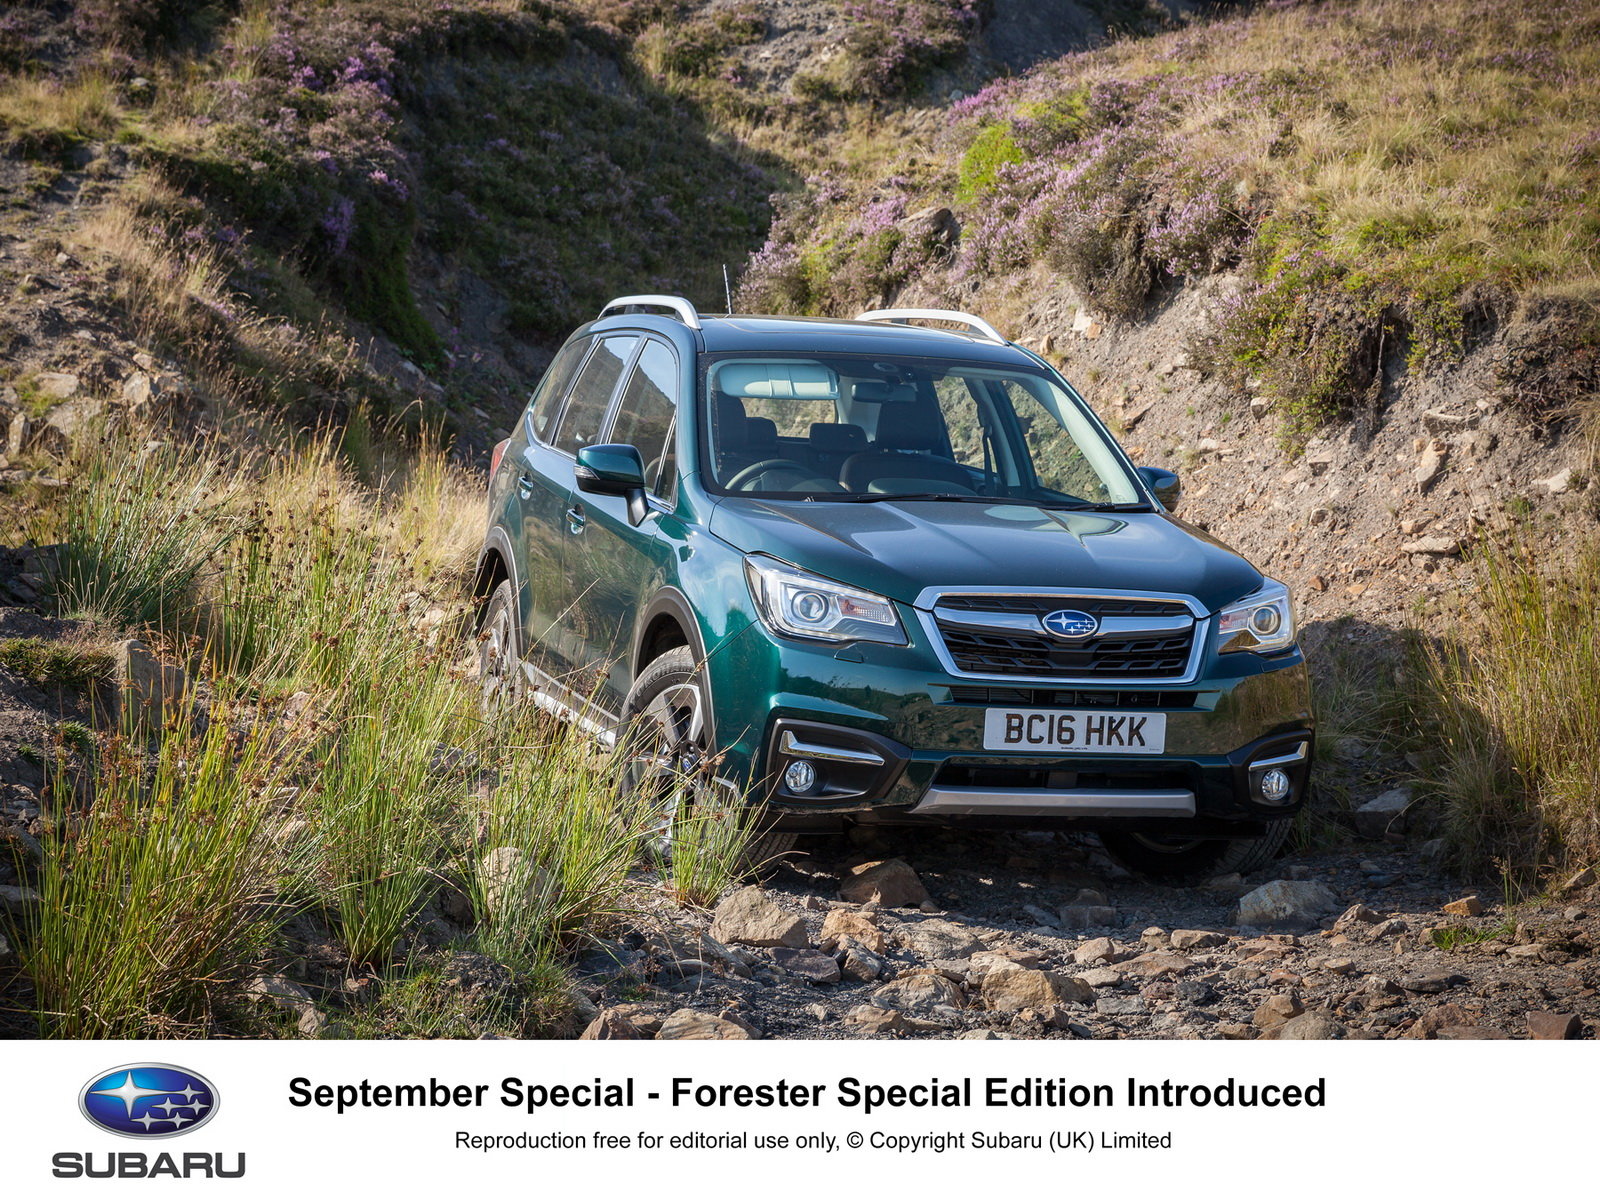 Subaru Forester v nové speciální edici pro myslivce